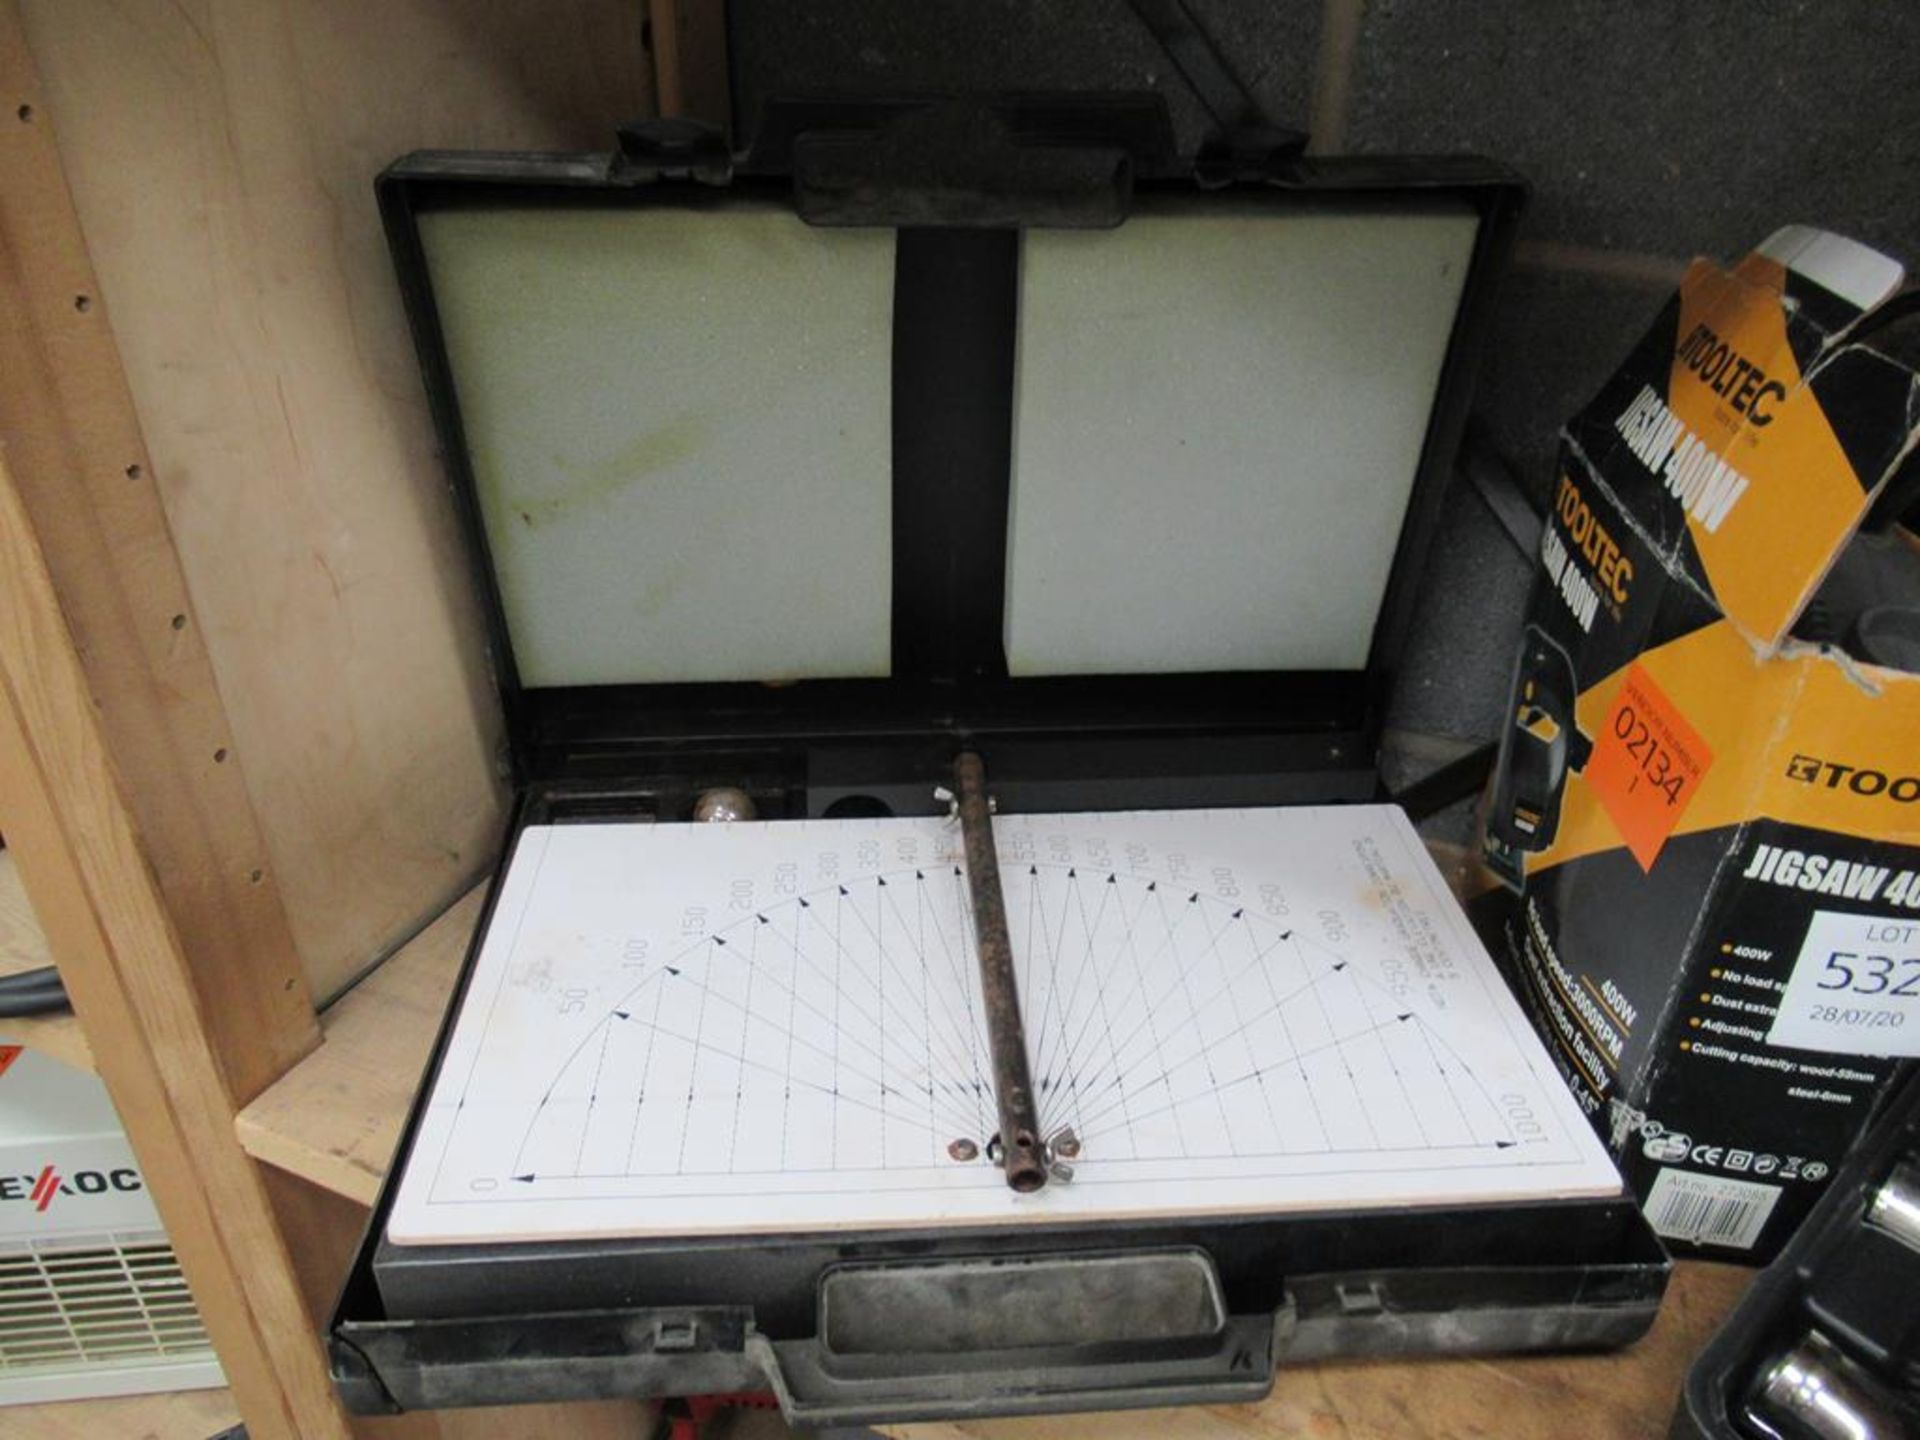 Shelf to contain Tooltech jigsaw, Duratool heat gun etc. - Image 4 of 4